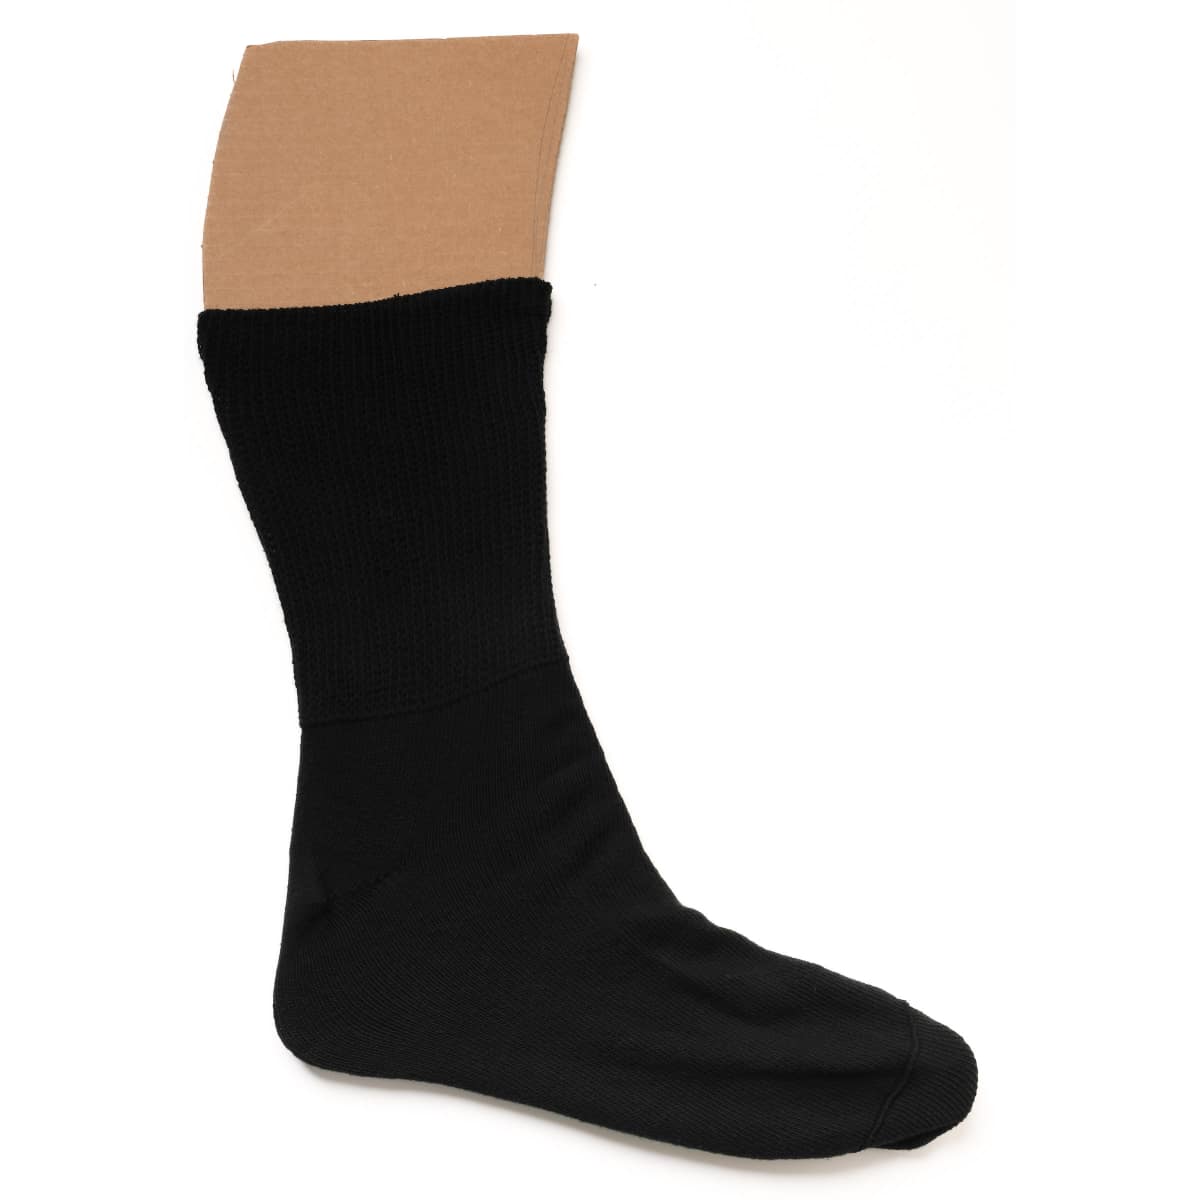 black bariatric socks